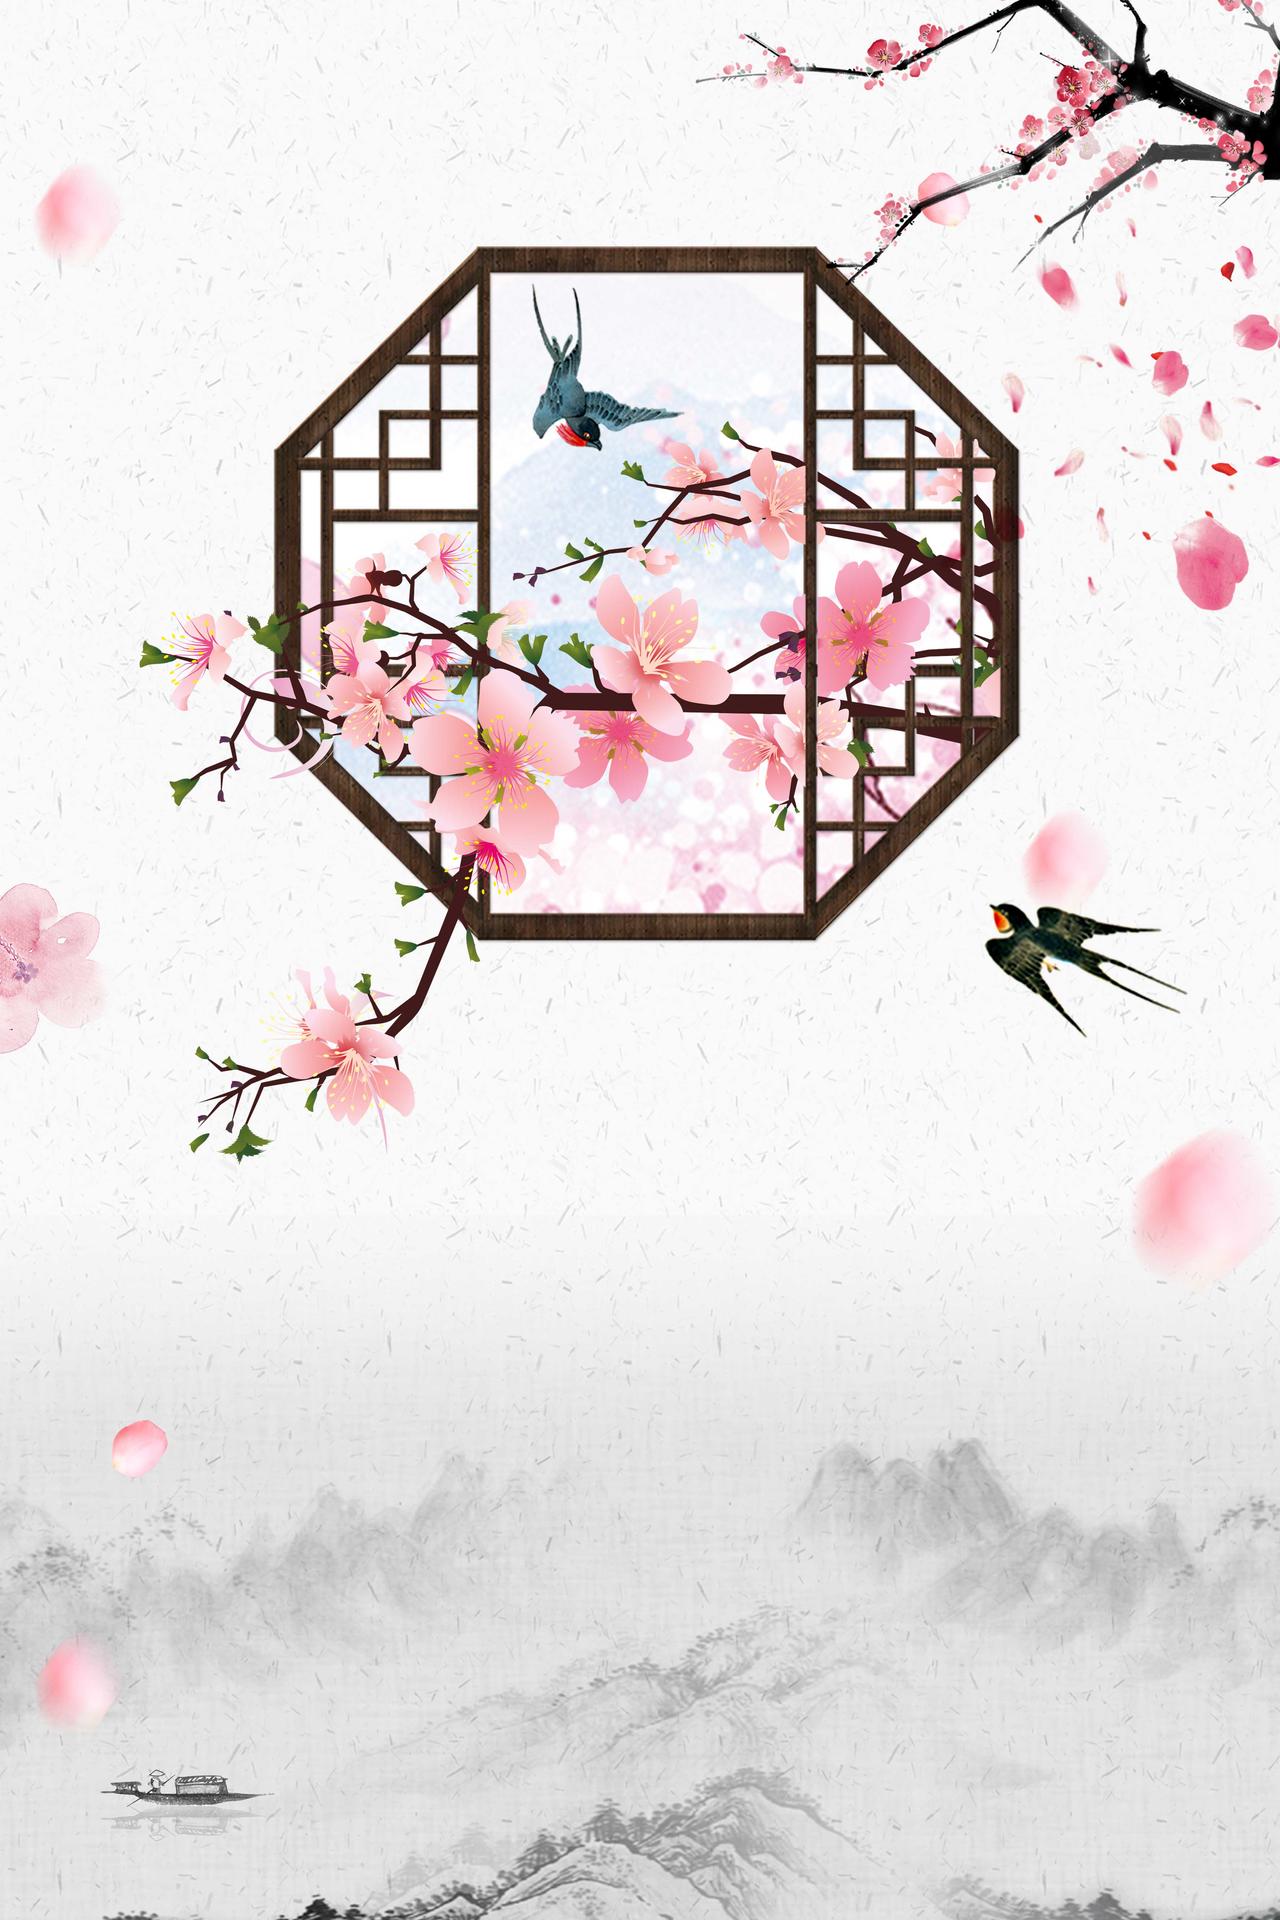 水墨山水画古风燕子桃花节旅游宣传海报背景素材